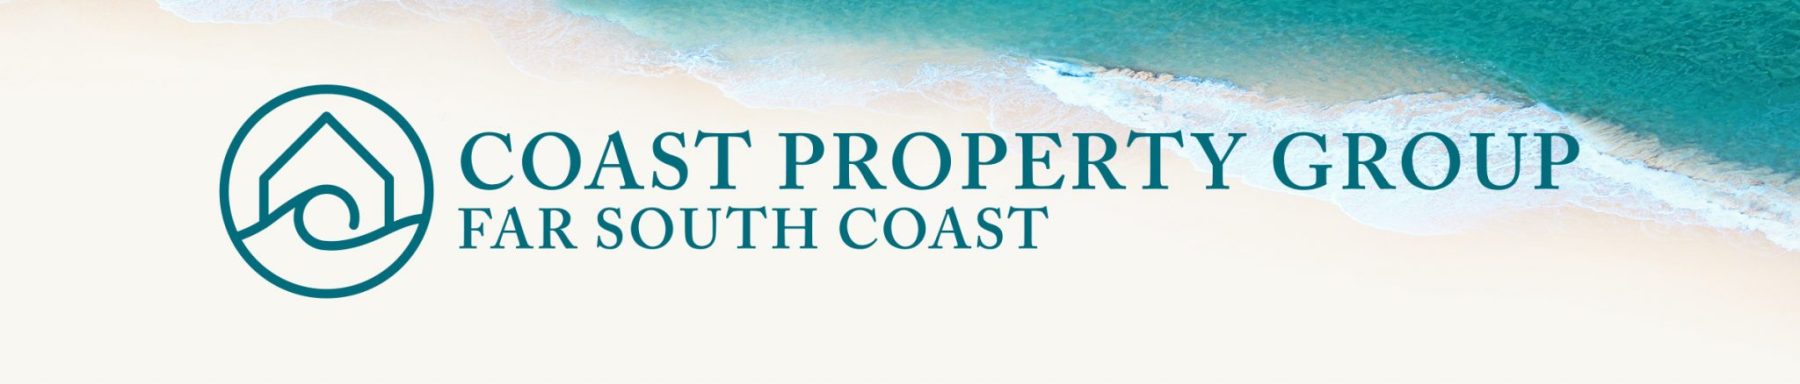 Coast Property Group